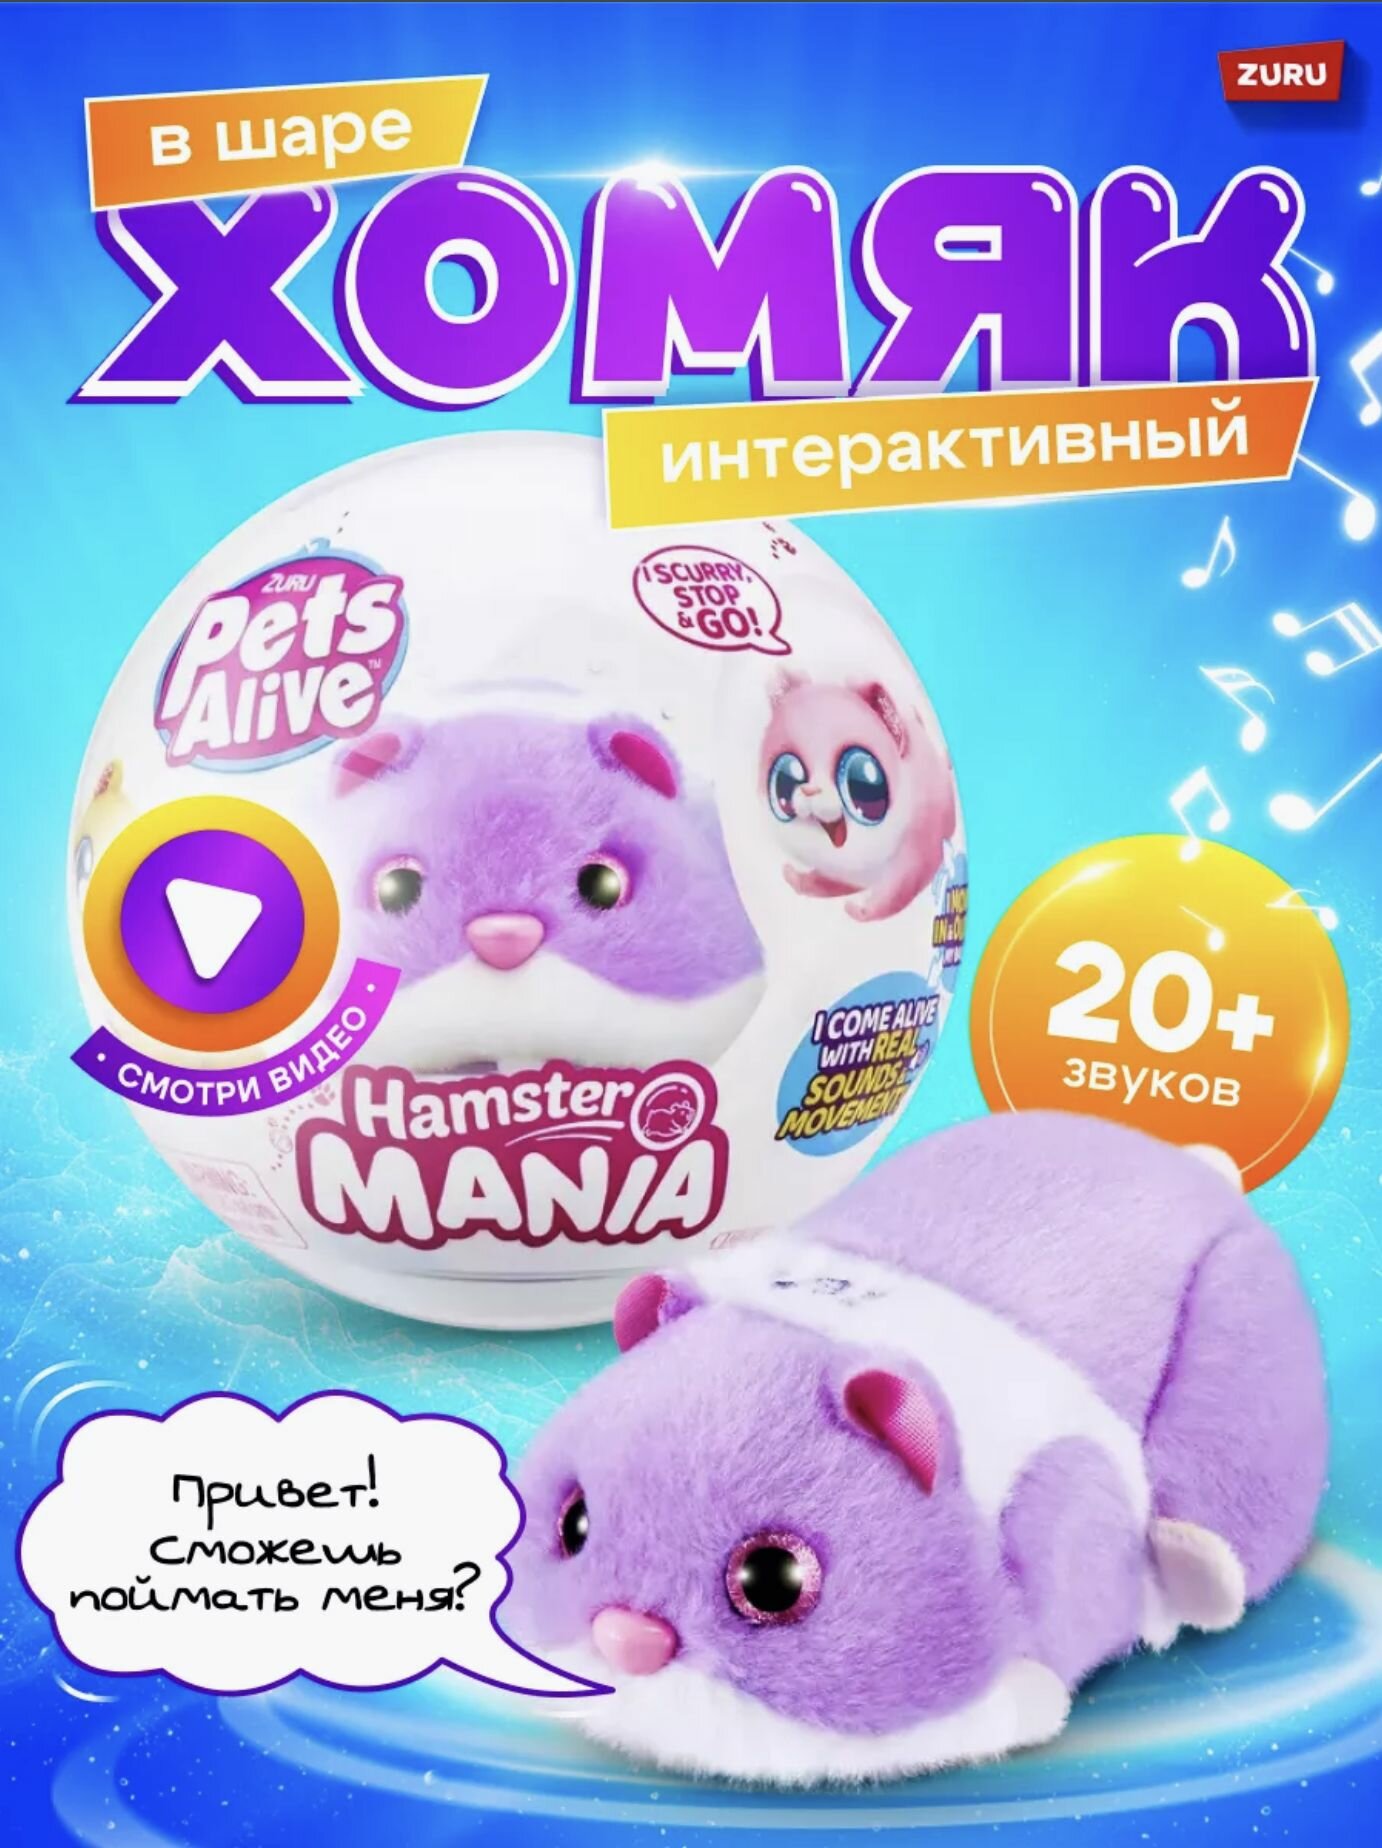 Интерактивная Игрушка ZURU Pets Alive Хомяк фиолетовый в шаре Hamstermania 9 см